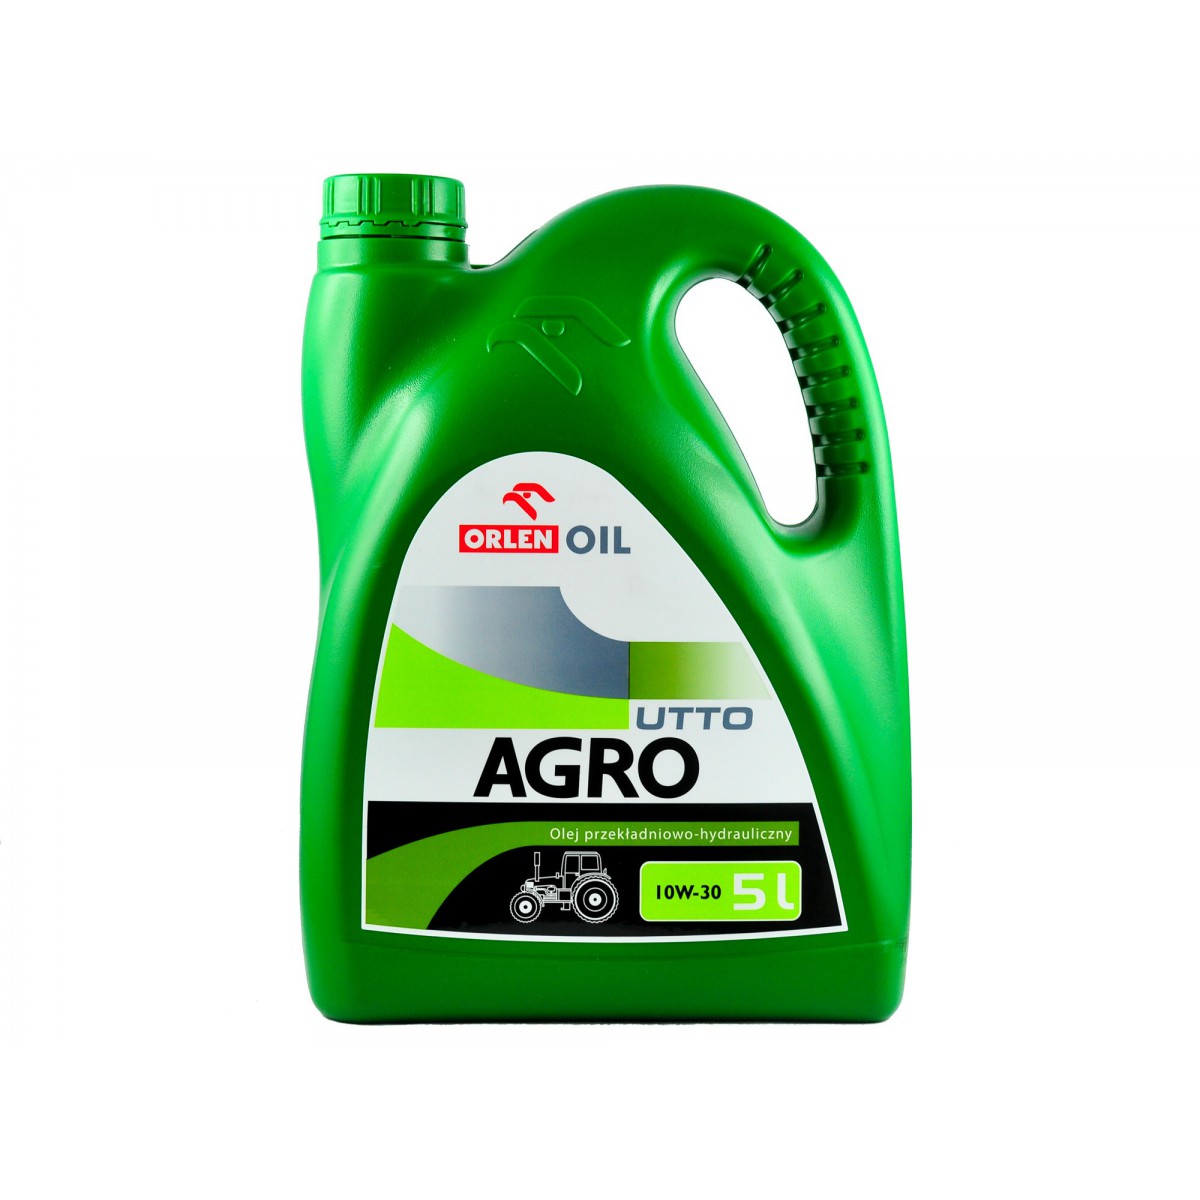 Převodový a hydraulický olej AGRO UTTO 10W-30